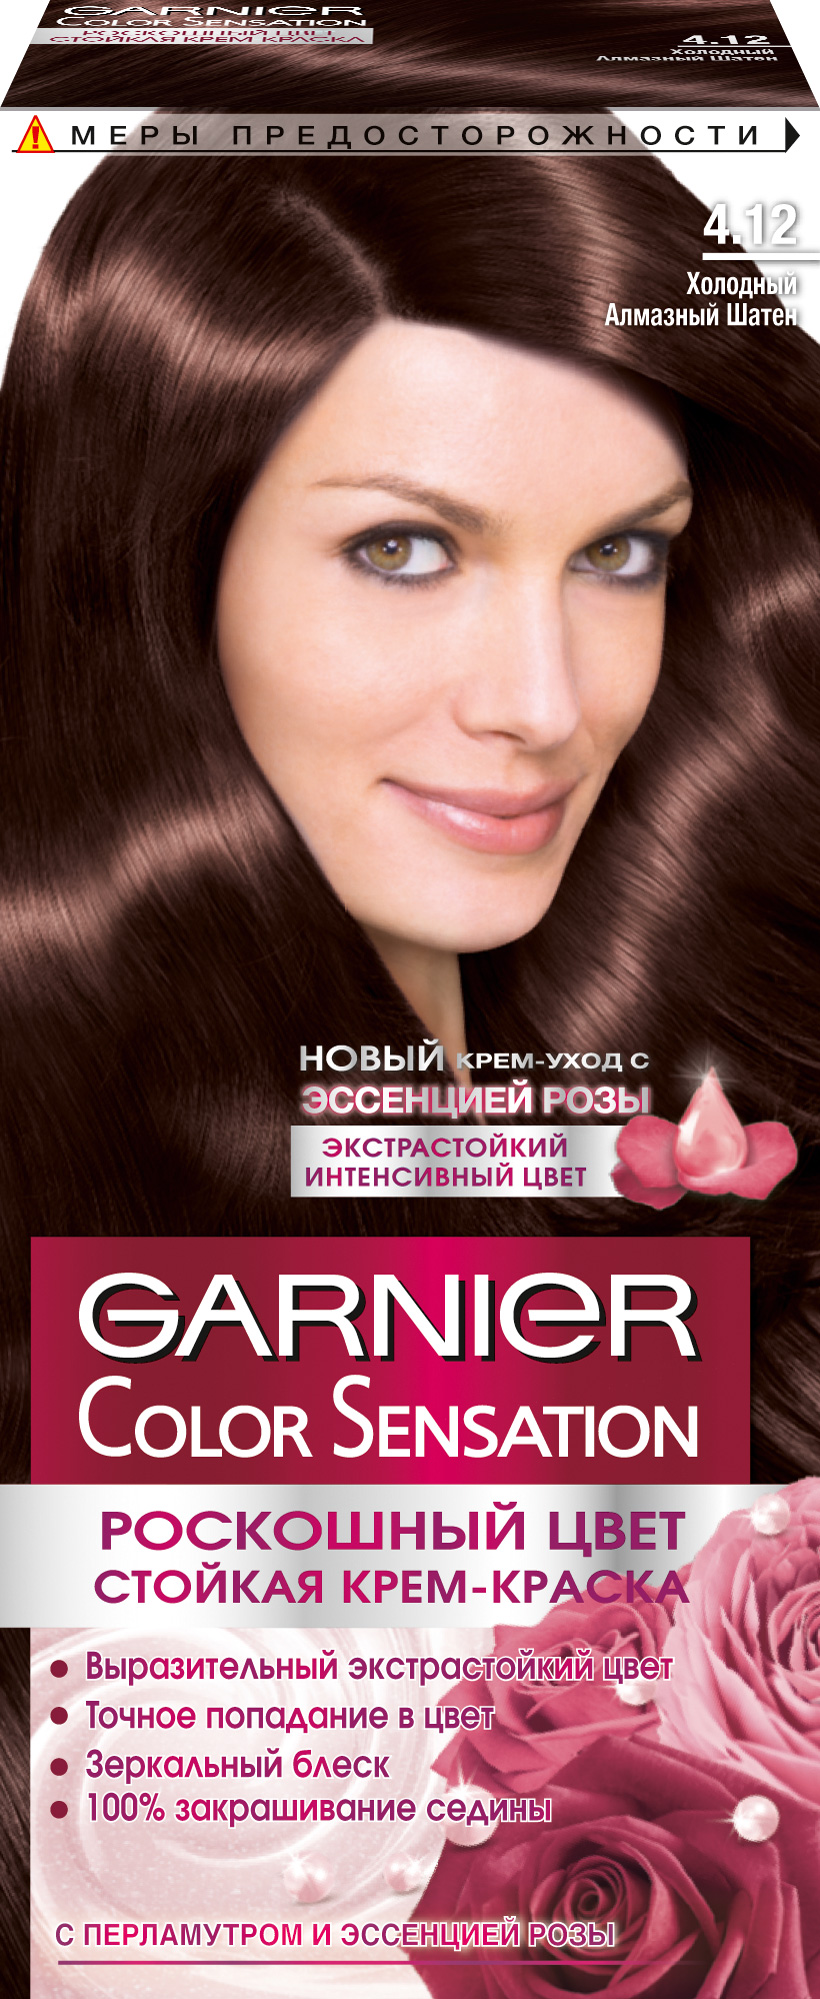 Краска для волос Garnier Color Sensation 4.12 Холодный алмазный шатен phyto color краска для волос cветлый шатен 1 шт